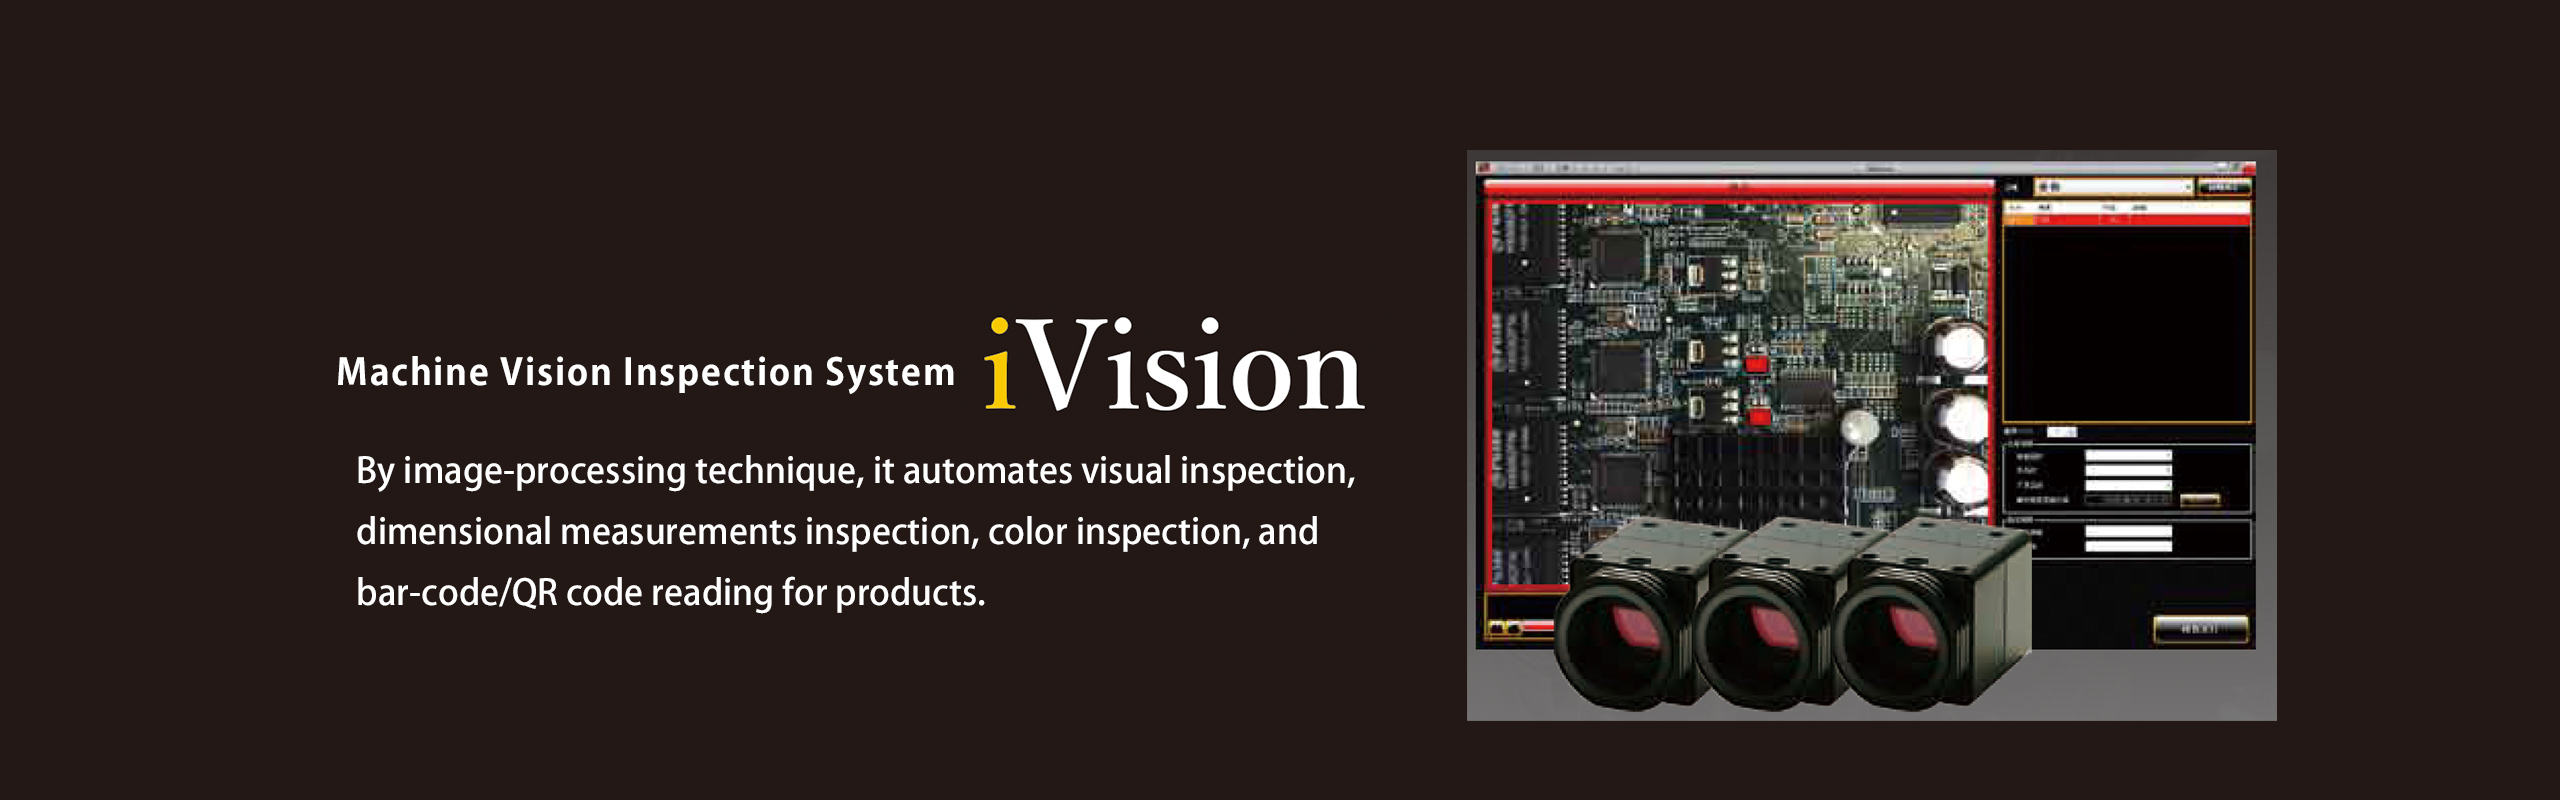 画像処理 外観検査システム iVision